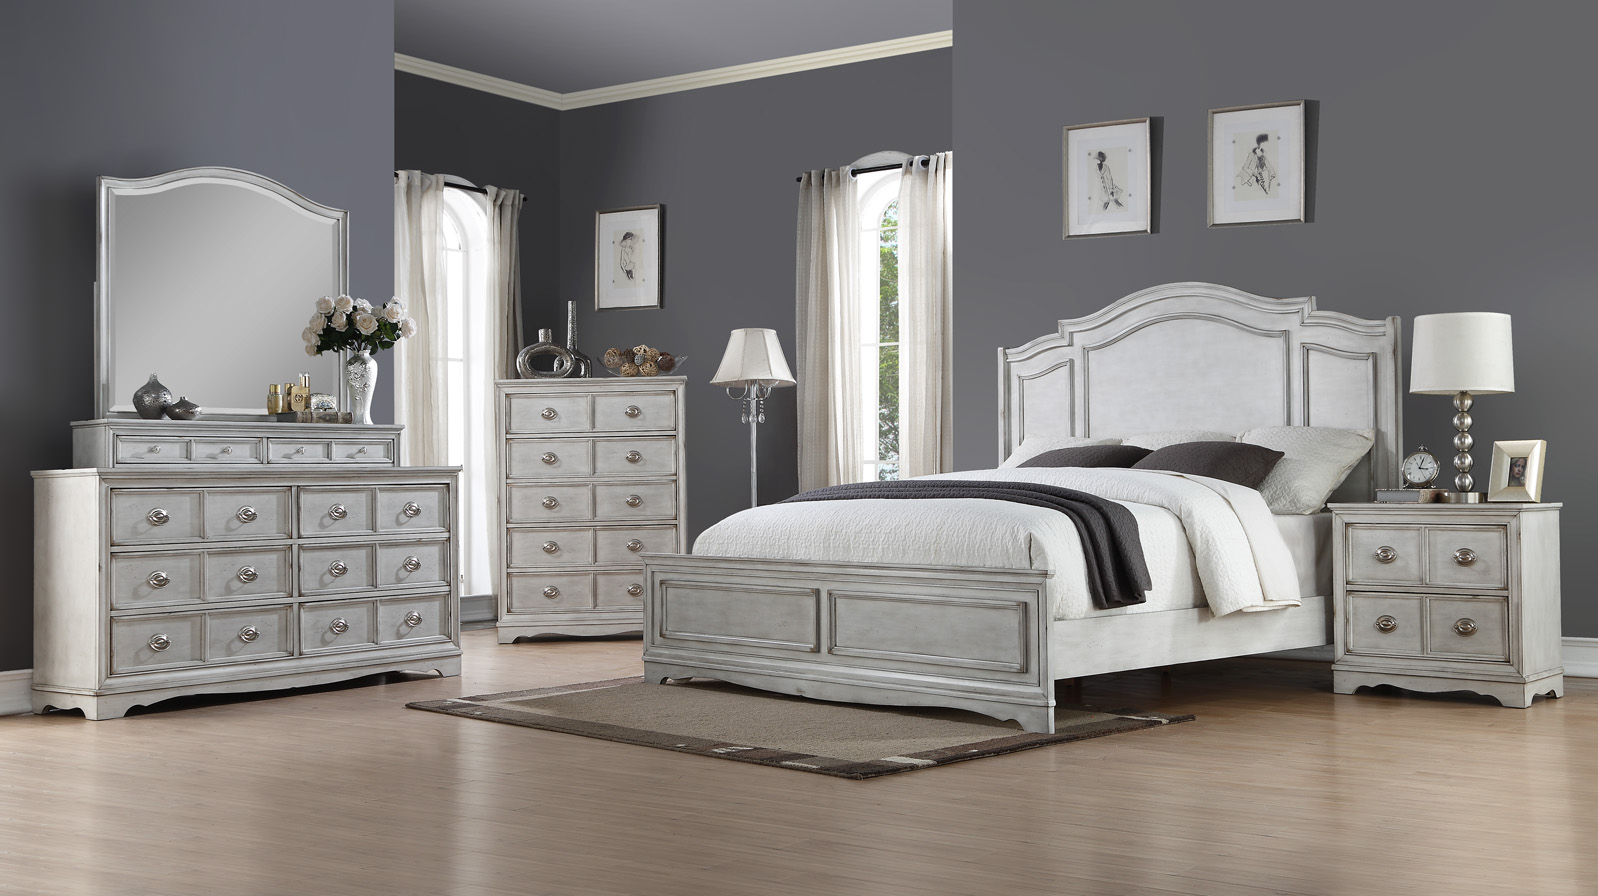 bedroom furniture liquidation sale melbourne